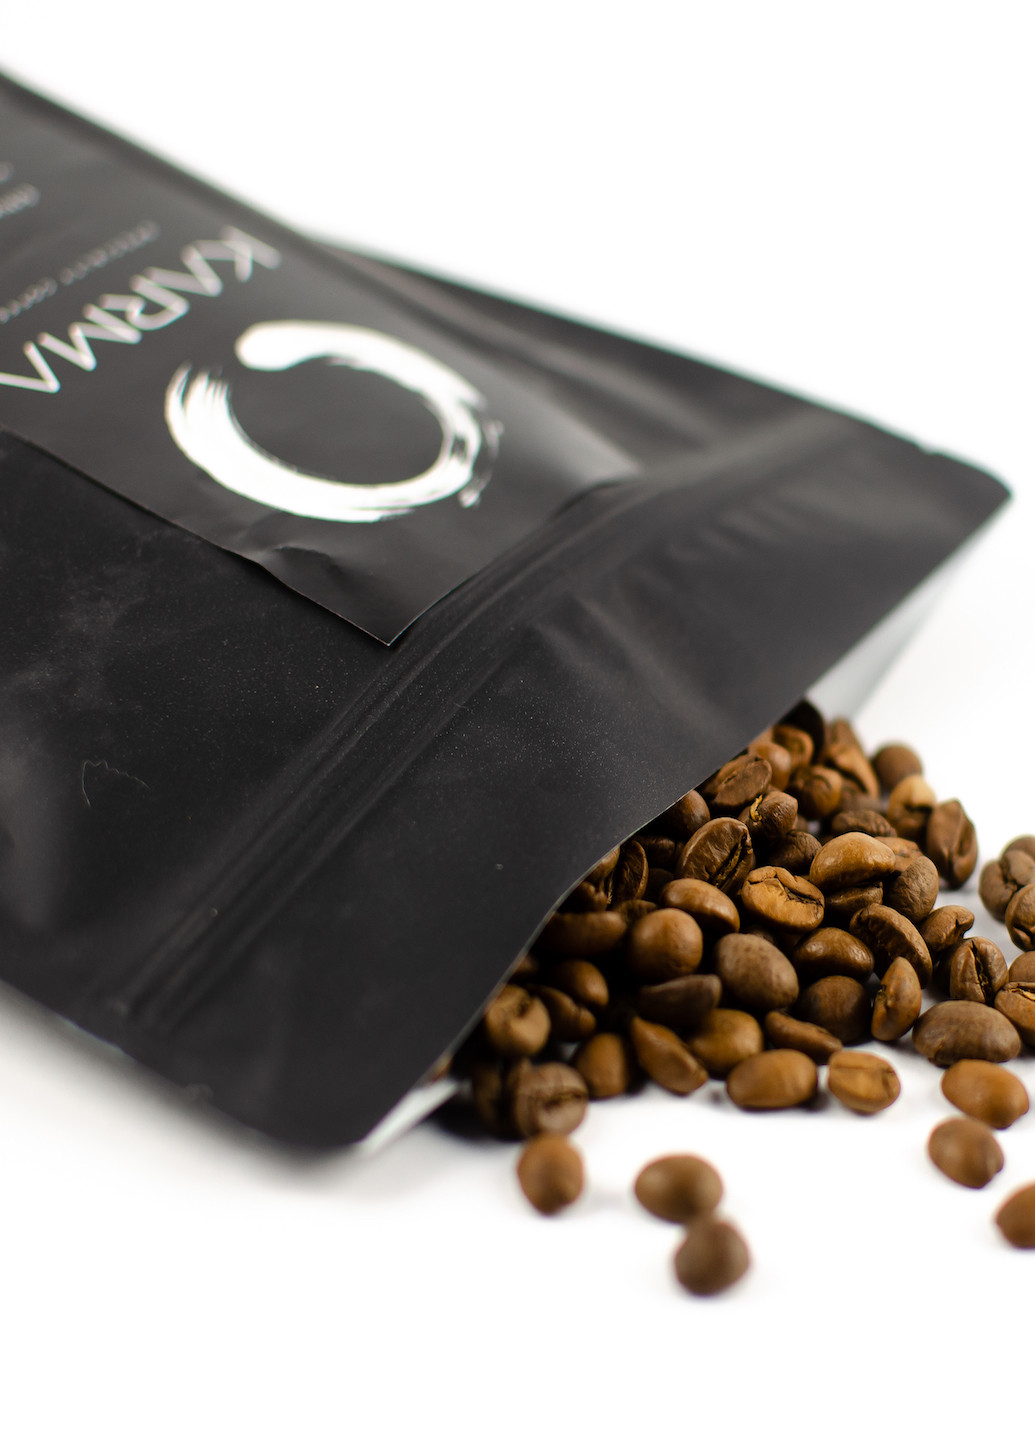 Натуральный кофе в зернах 100% арабіка, 20*20*5 см, 200 гр KARMA (252919437)